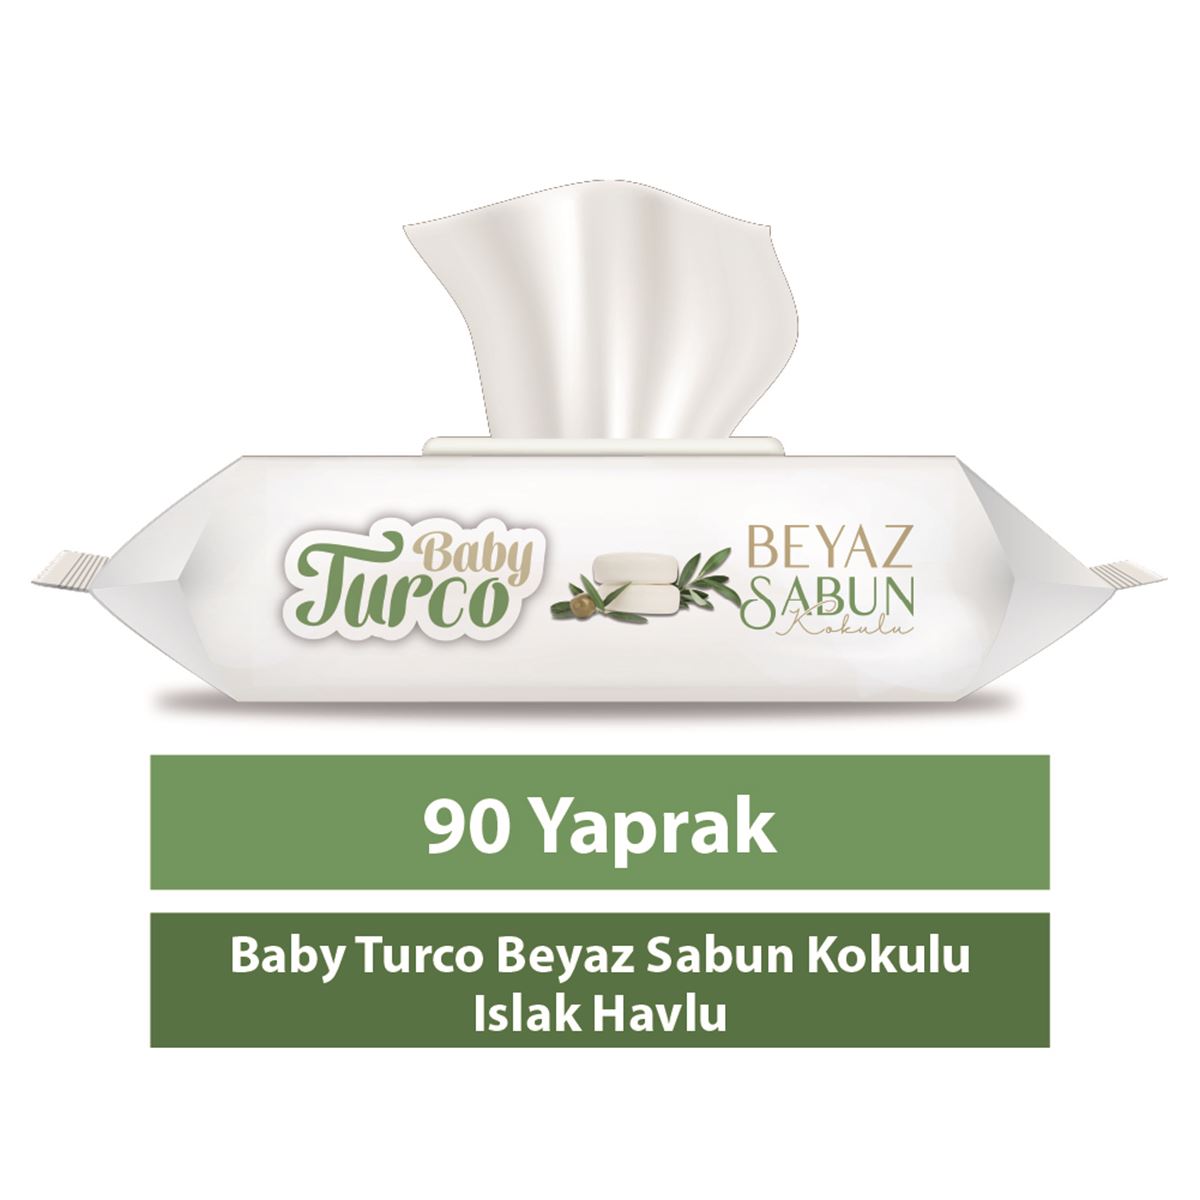 Baby Turco Beyaz Sabun Kokulu Islak Havlu (24*90) 2160 Yaprak